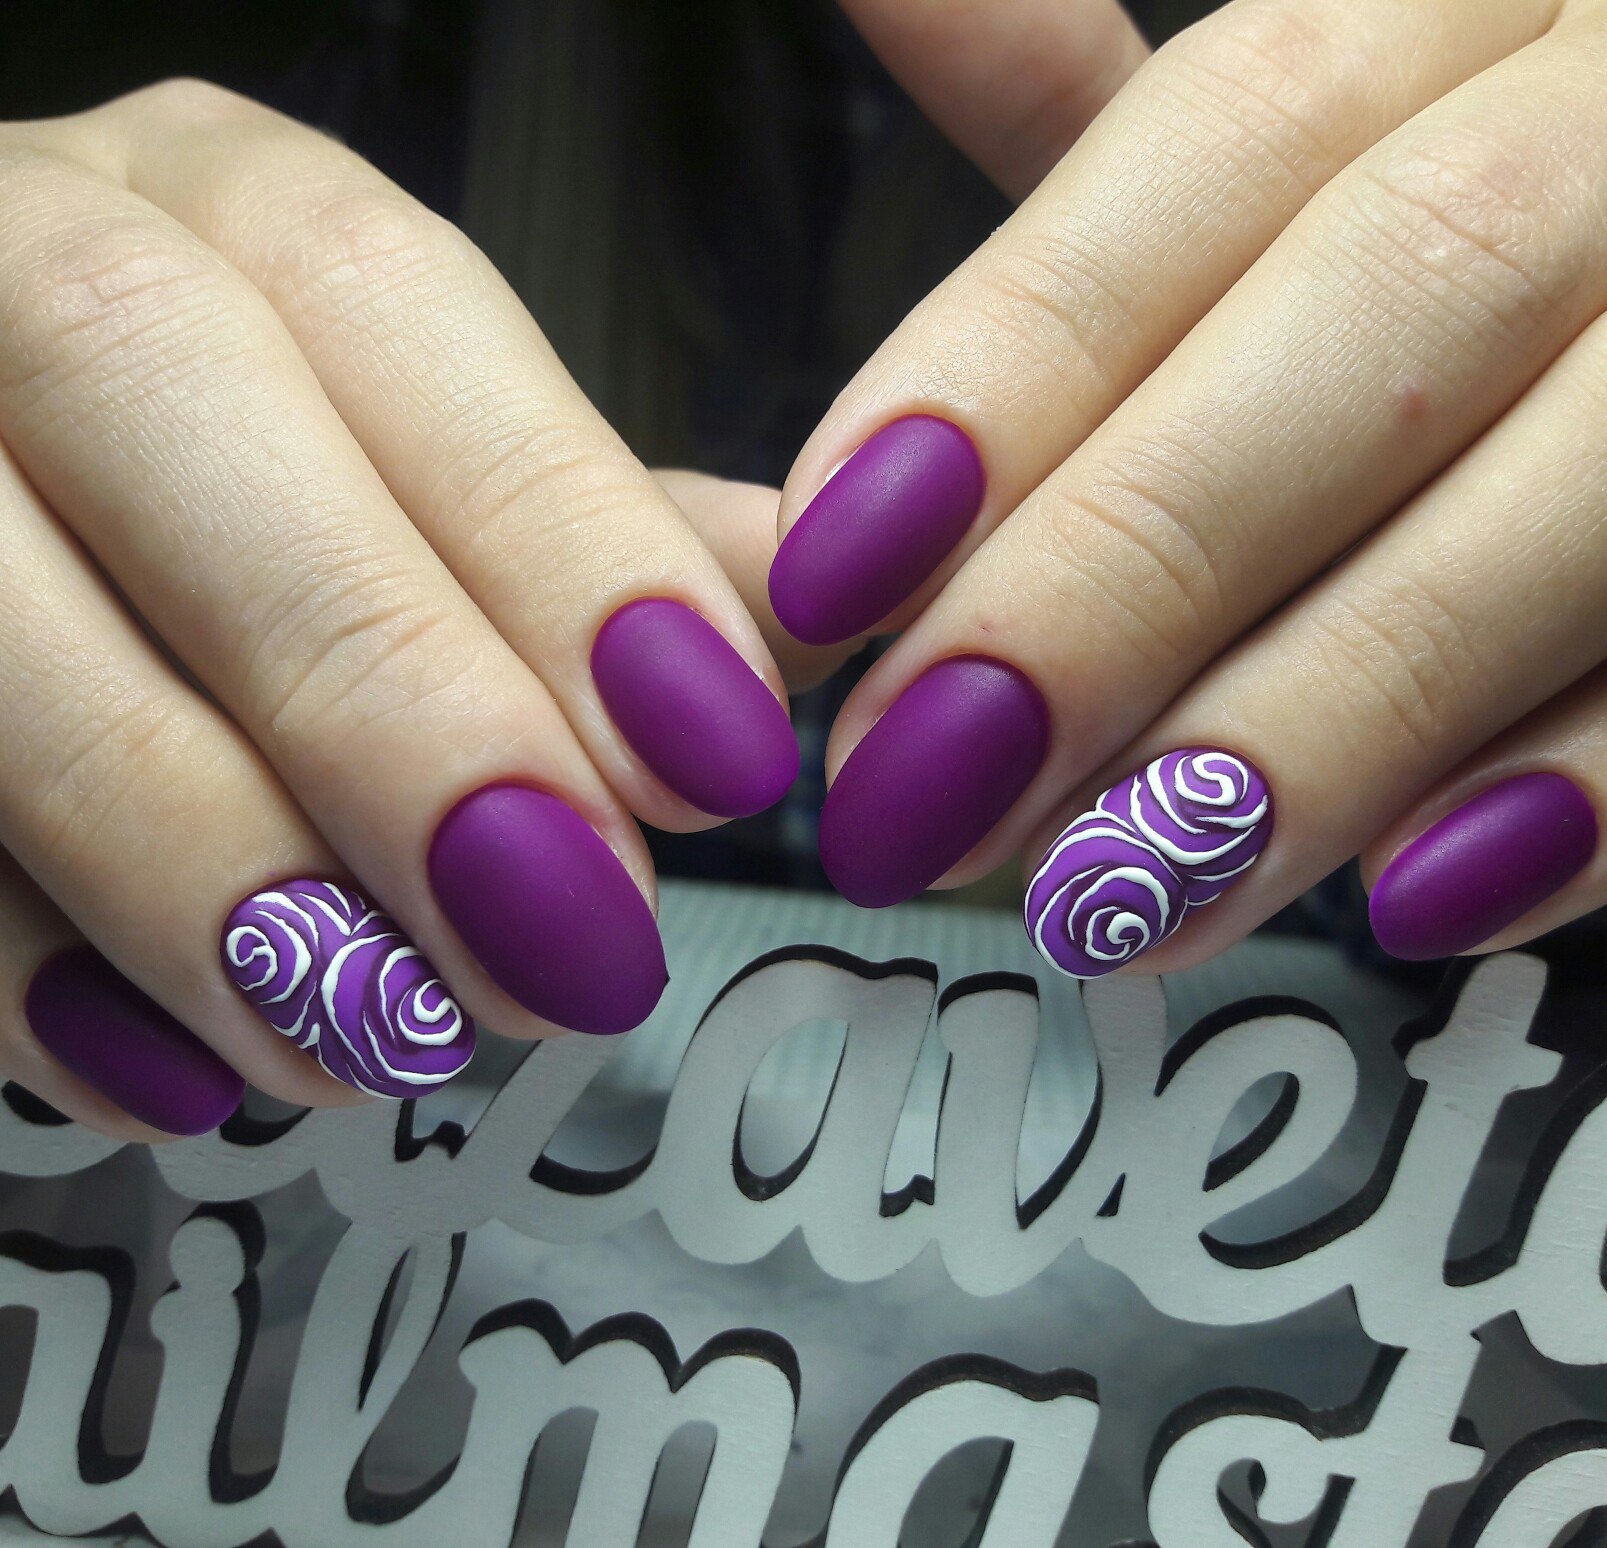 Маникюр с дизайном на средние ногти в фиолетовых оттенках.
